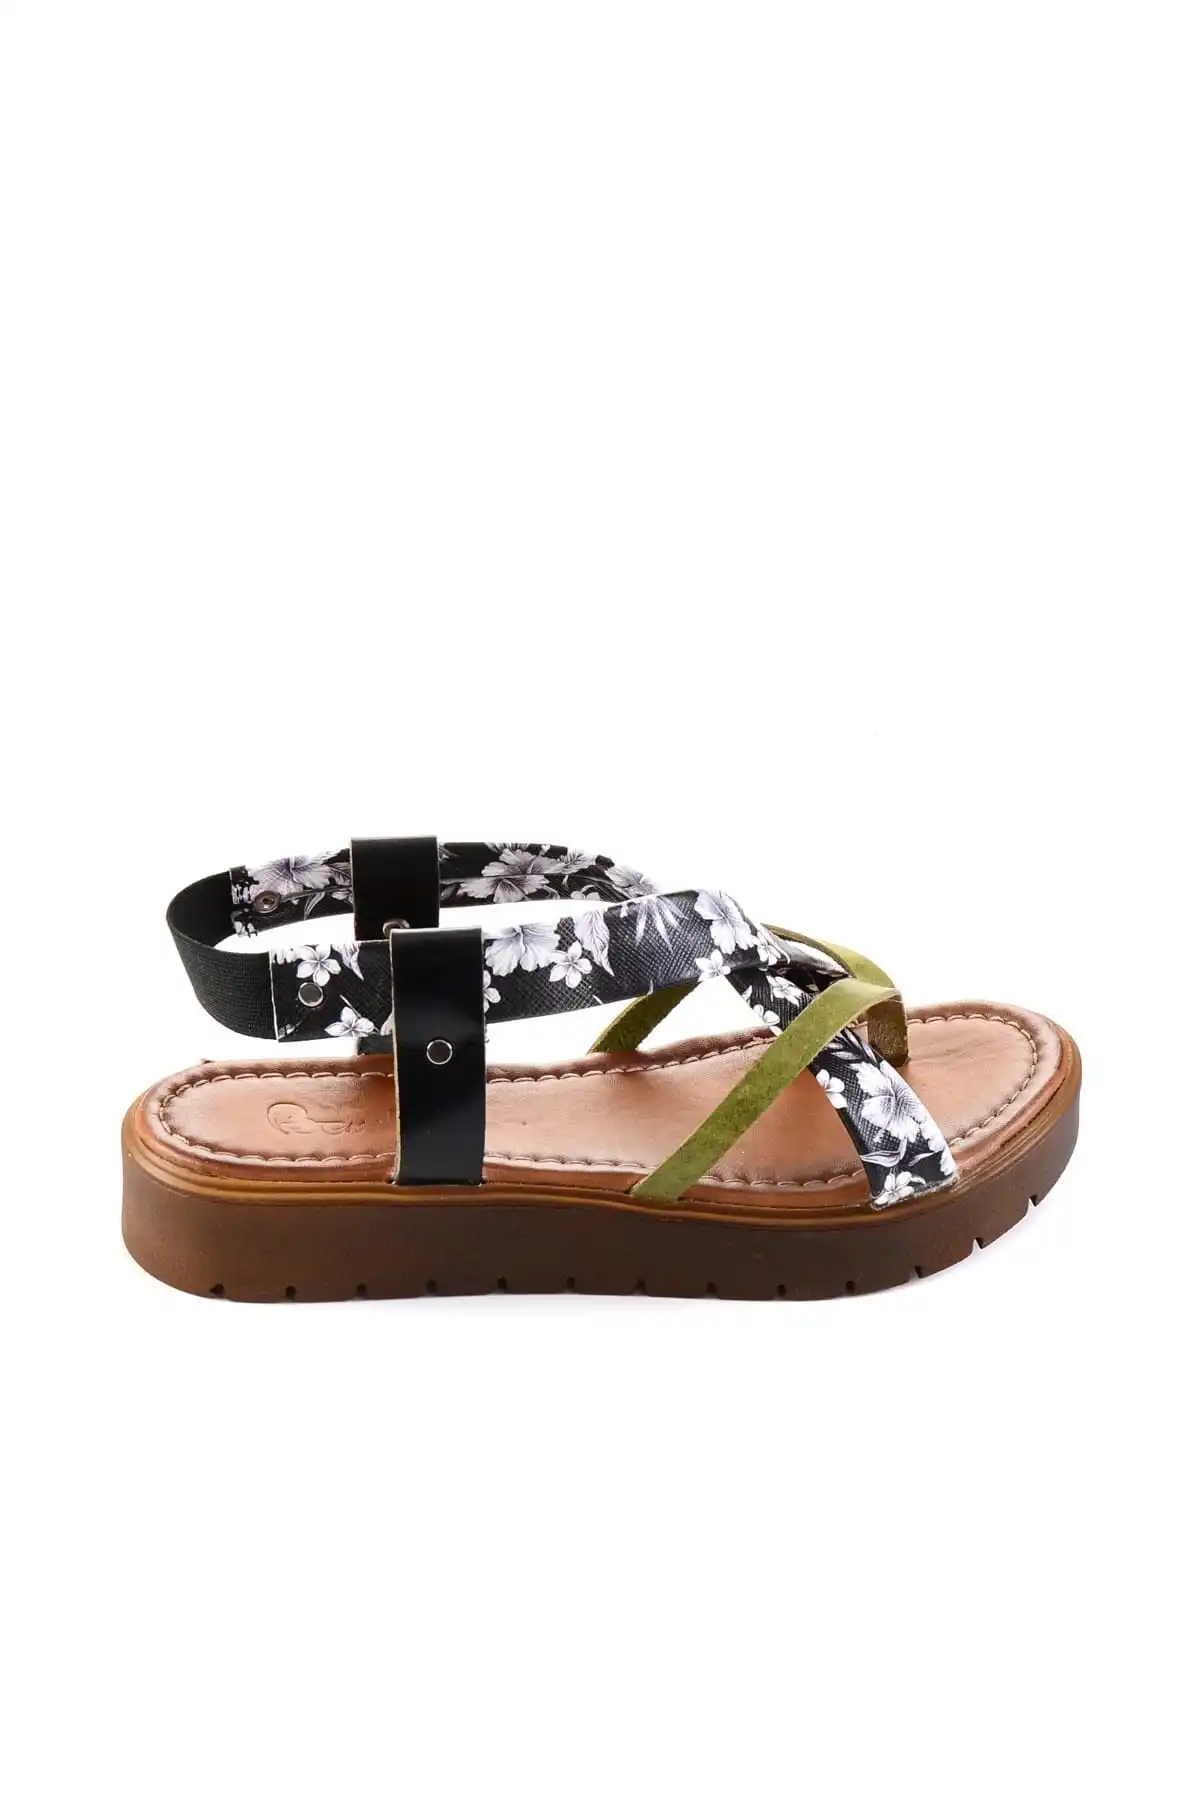 Bambi/Женская обувь черного цвета H05090960 - купить по выгодной цене |